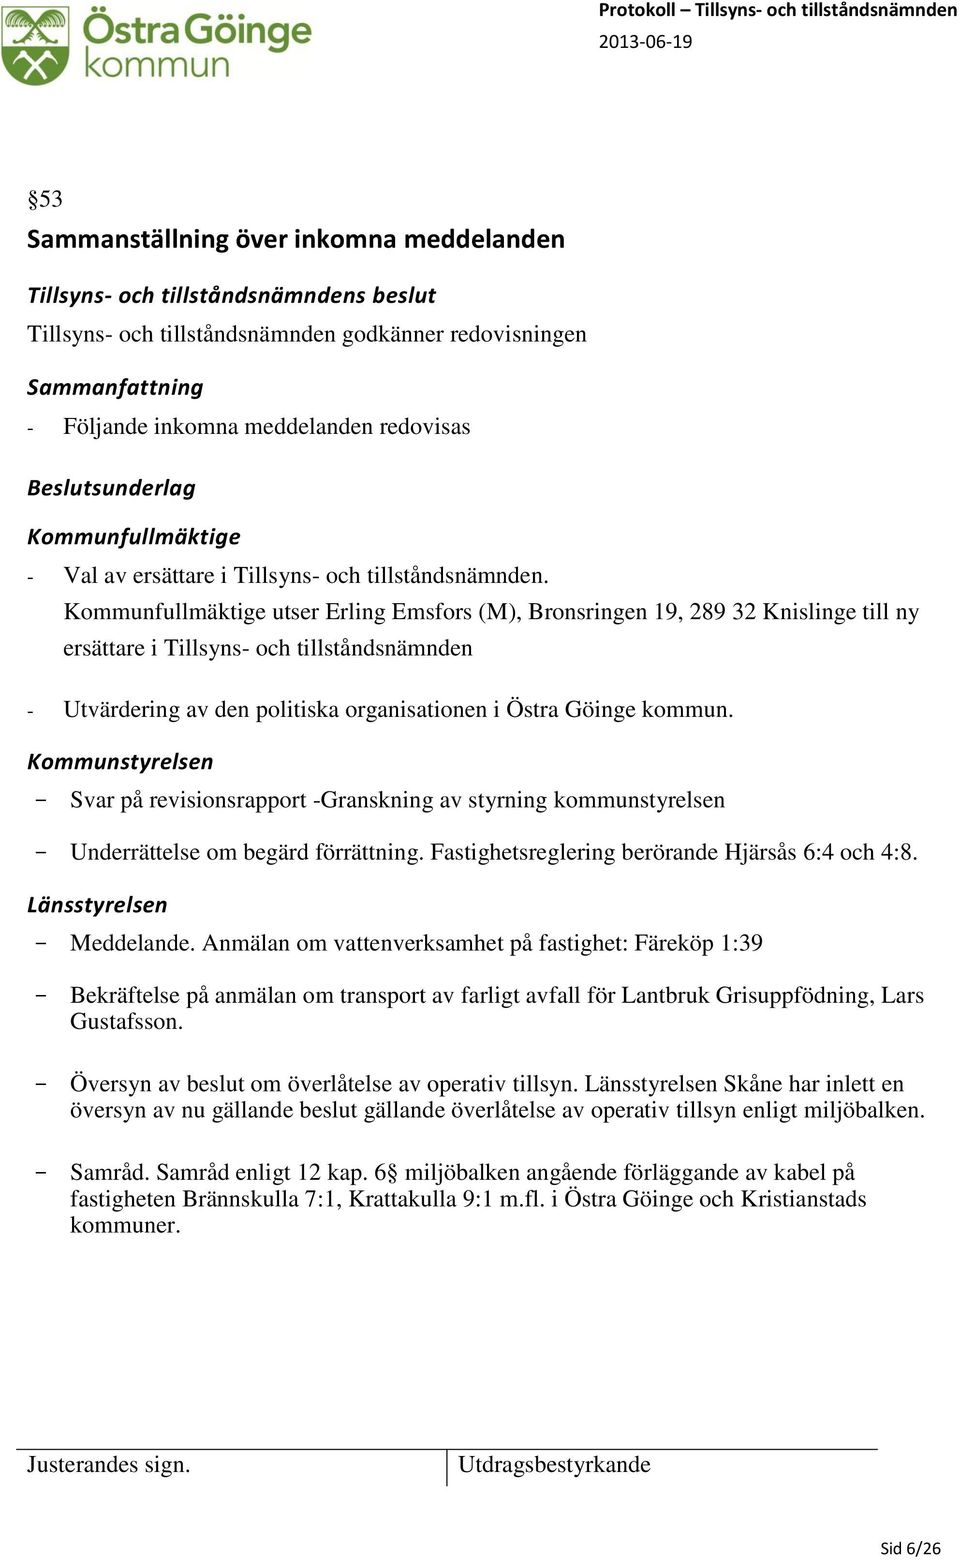 Kommunfullmäktige utser Erling Emsfors (M), Bronsringen 19, 289 32 Knislinge till ny ersättare i Tillsyns- och tillståndsnämnden - Utvärdering av den politiska organisationen i Östra Göinge kommun.